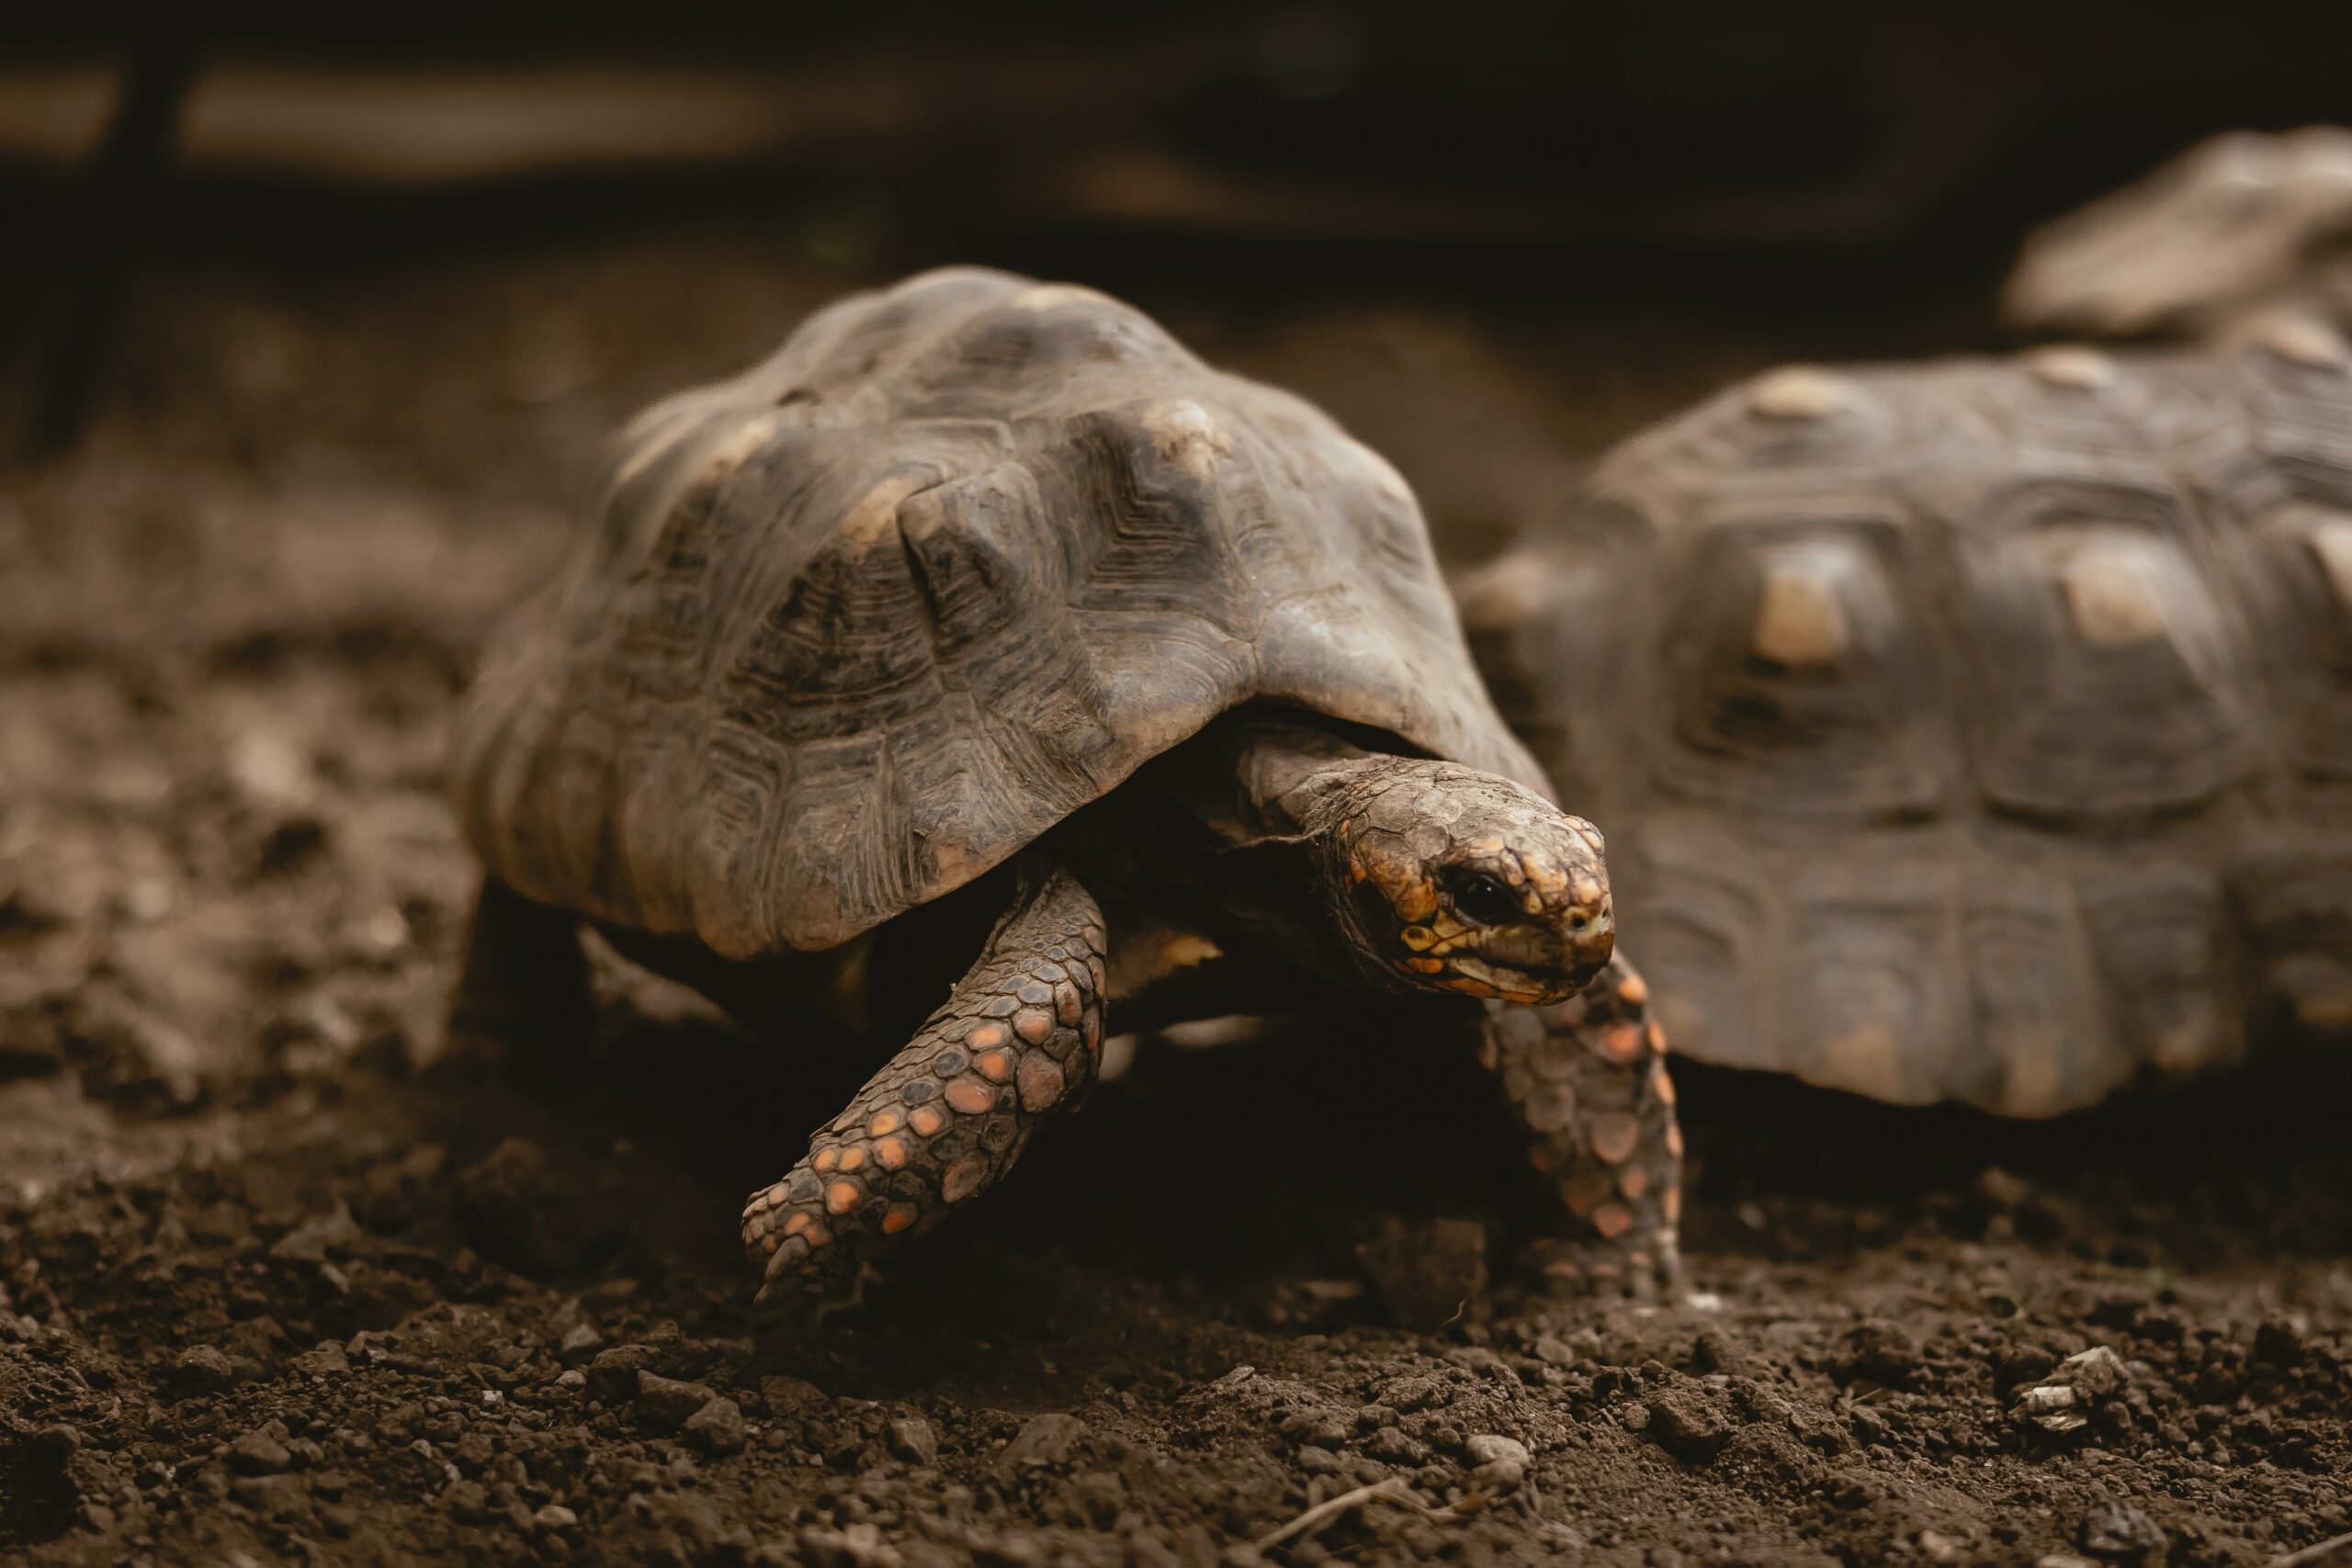 Eine starke Beziehung zu einer Schildkröte kann man sich eher nicht vorstellen, aber es ist möglich (Foto: Kevin Schmid/Unsplash).